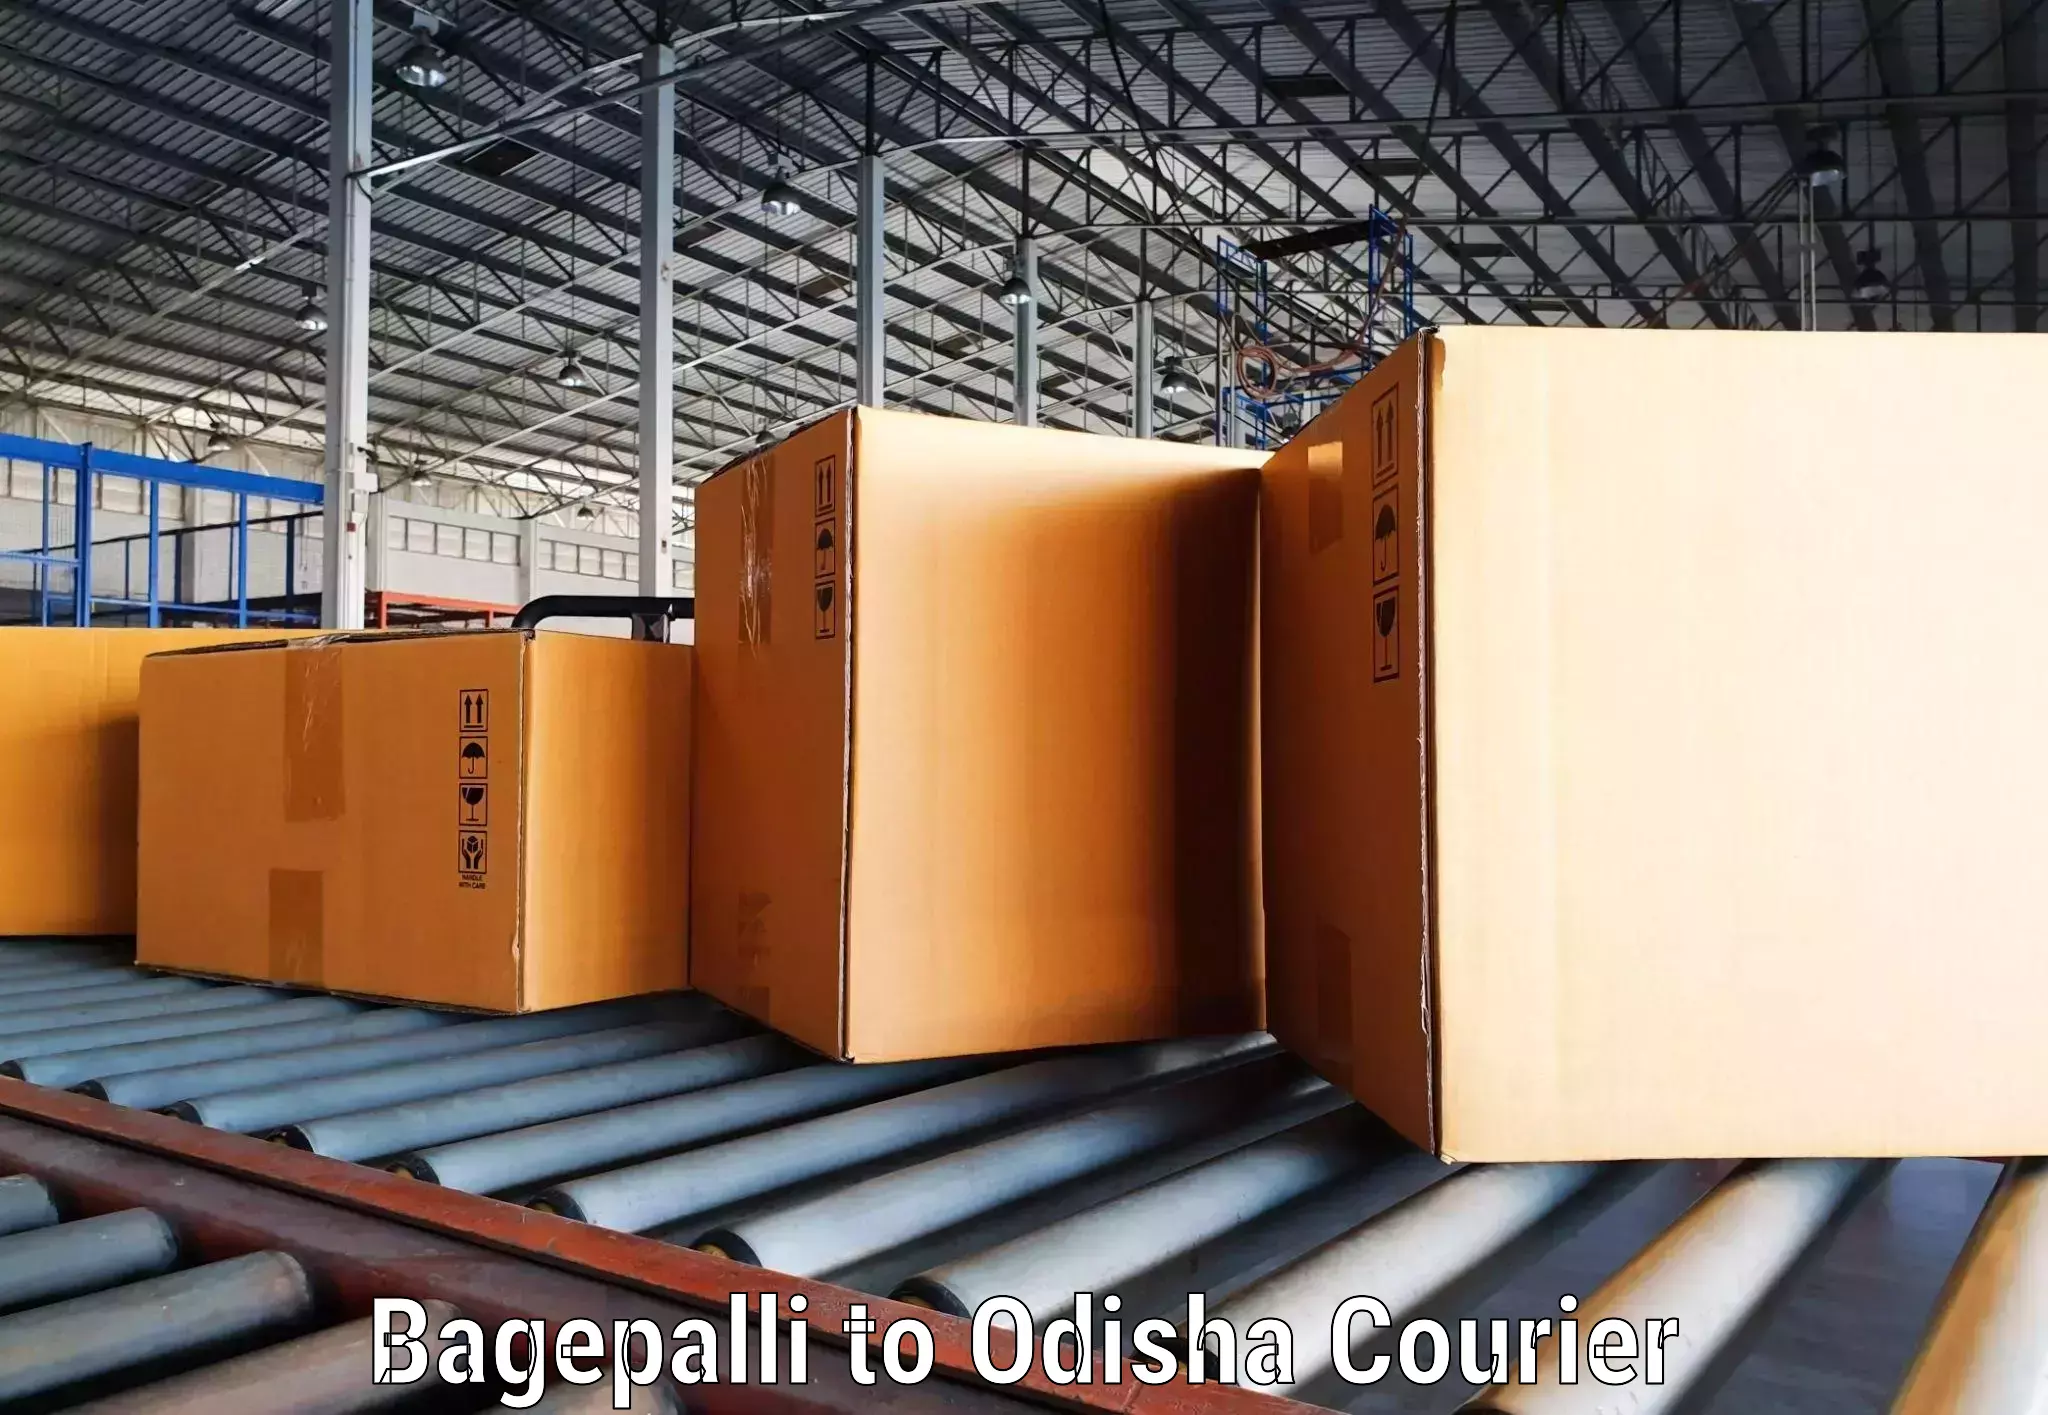 Door-to-door freight service Bagepalli to Dandisahi